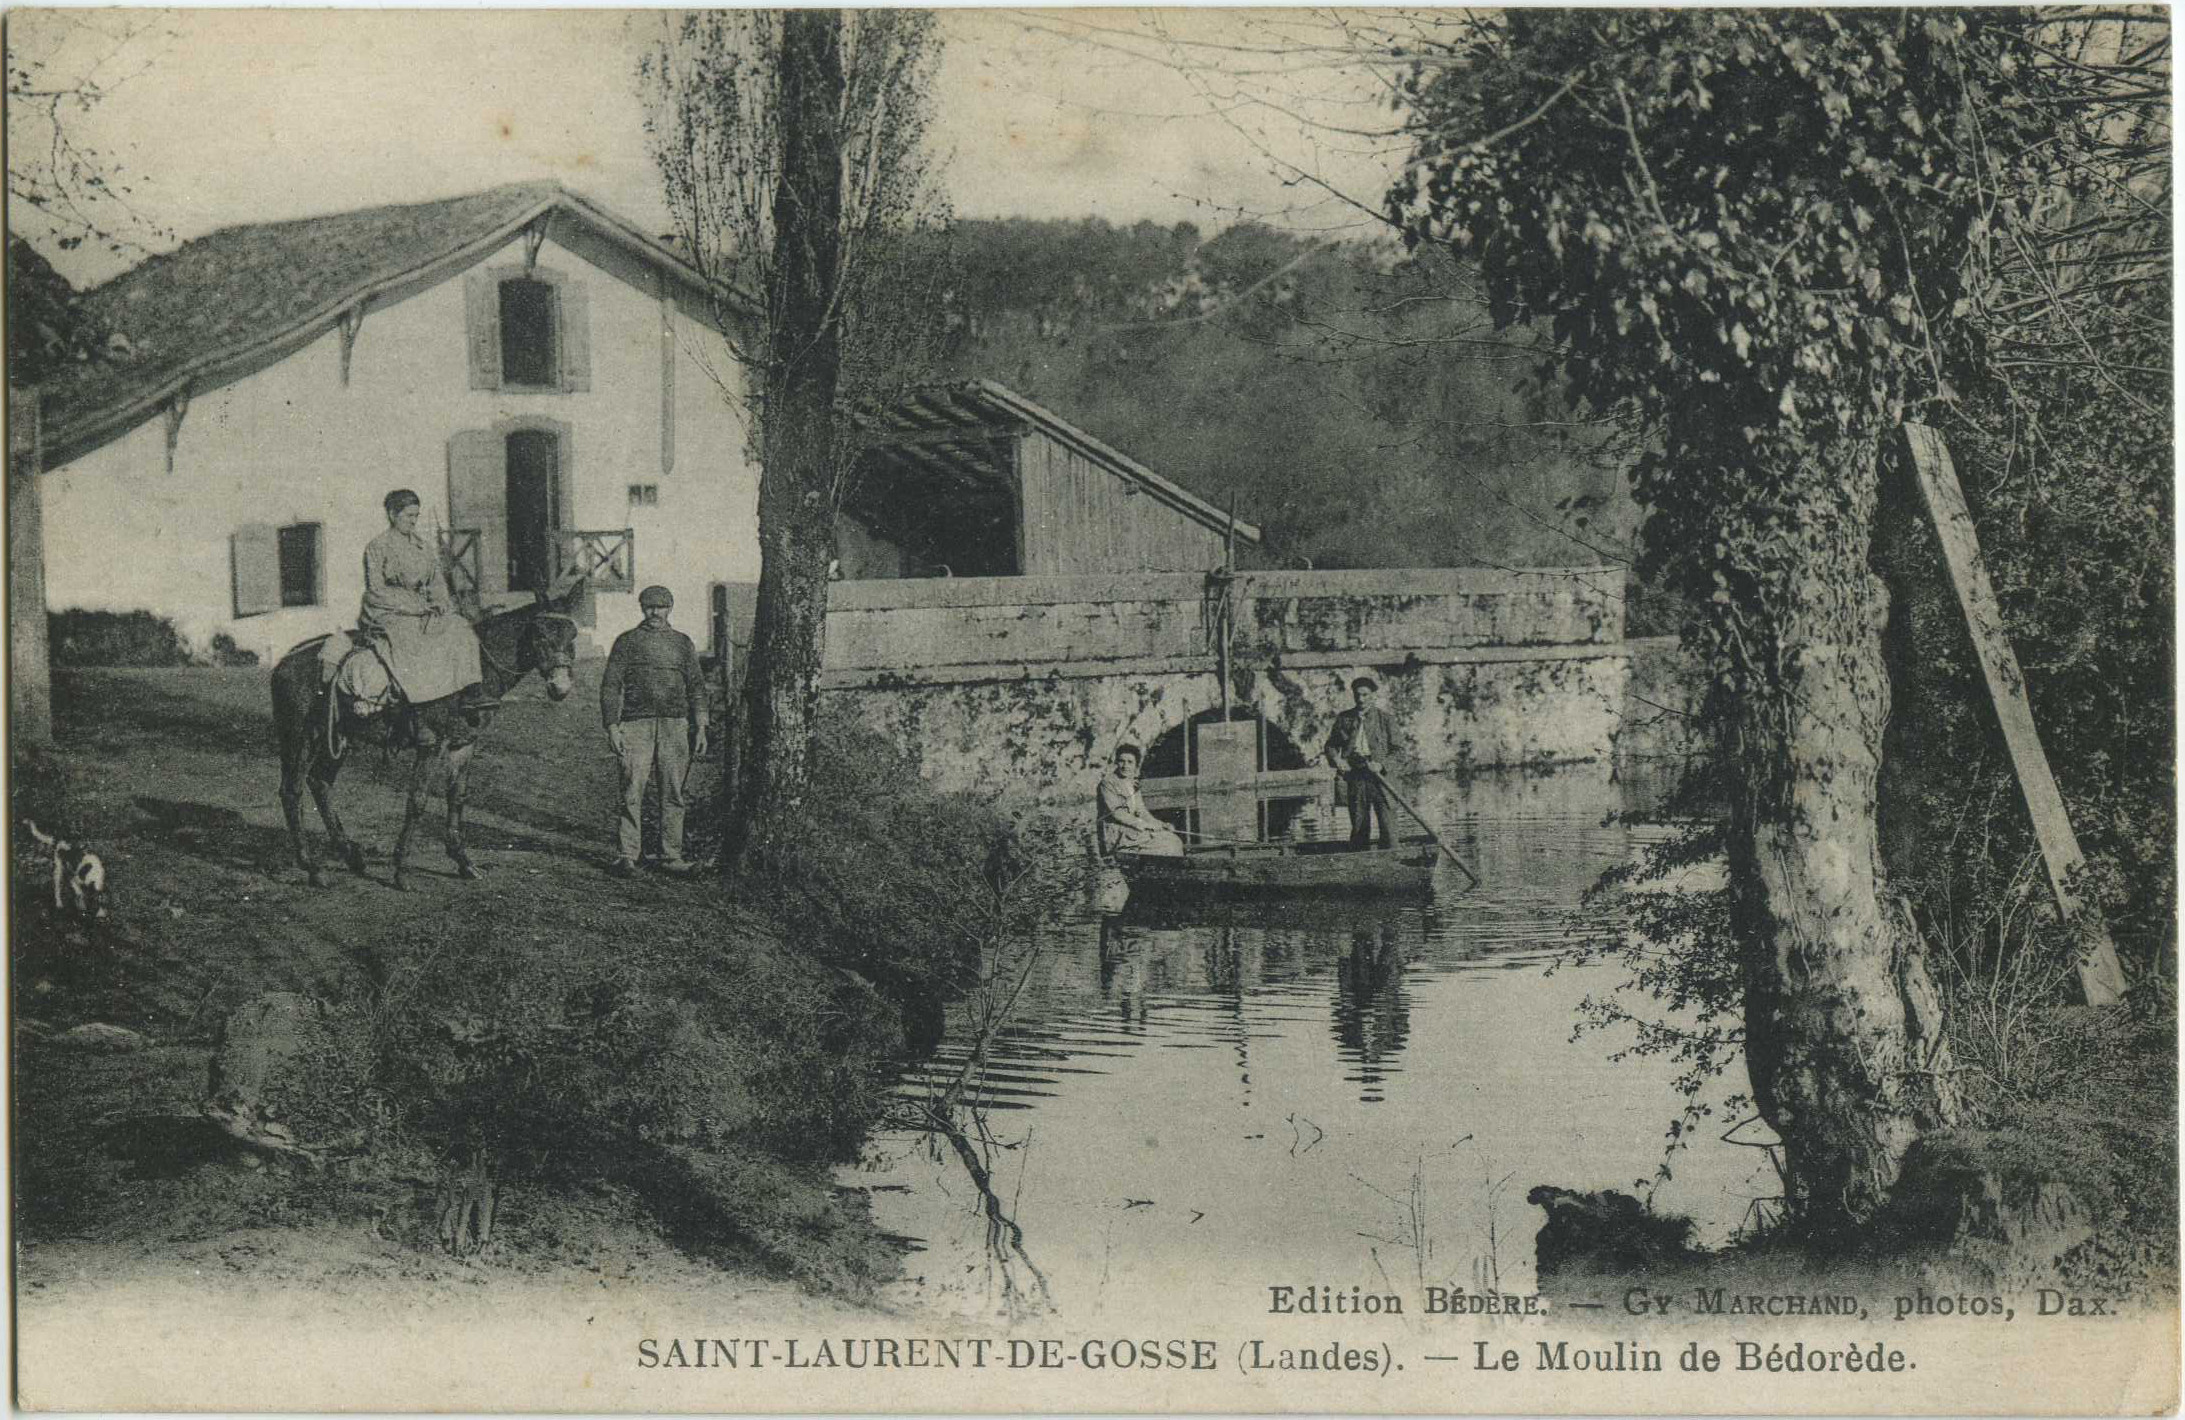 Saint-Laurent-de-Gosse - Le Moulin de Bédorède.